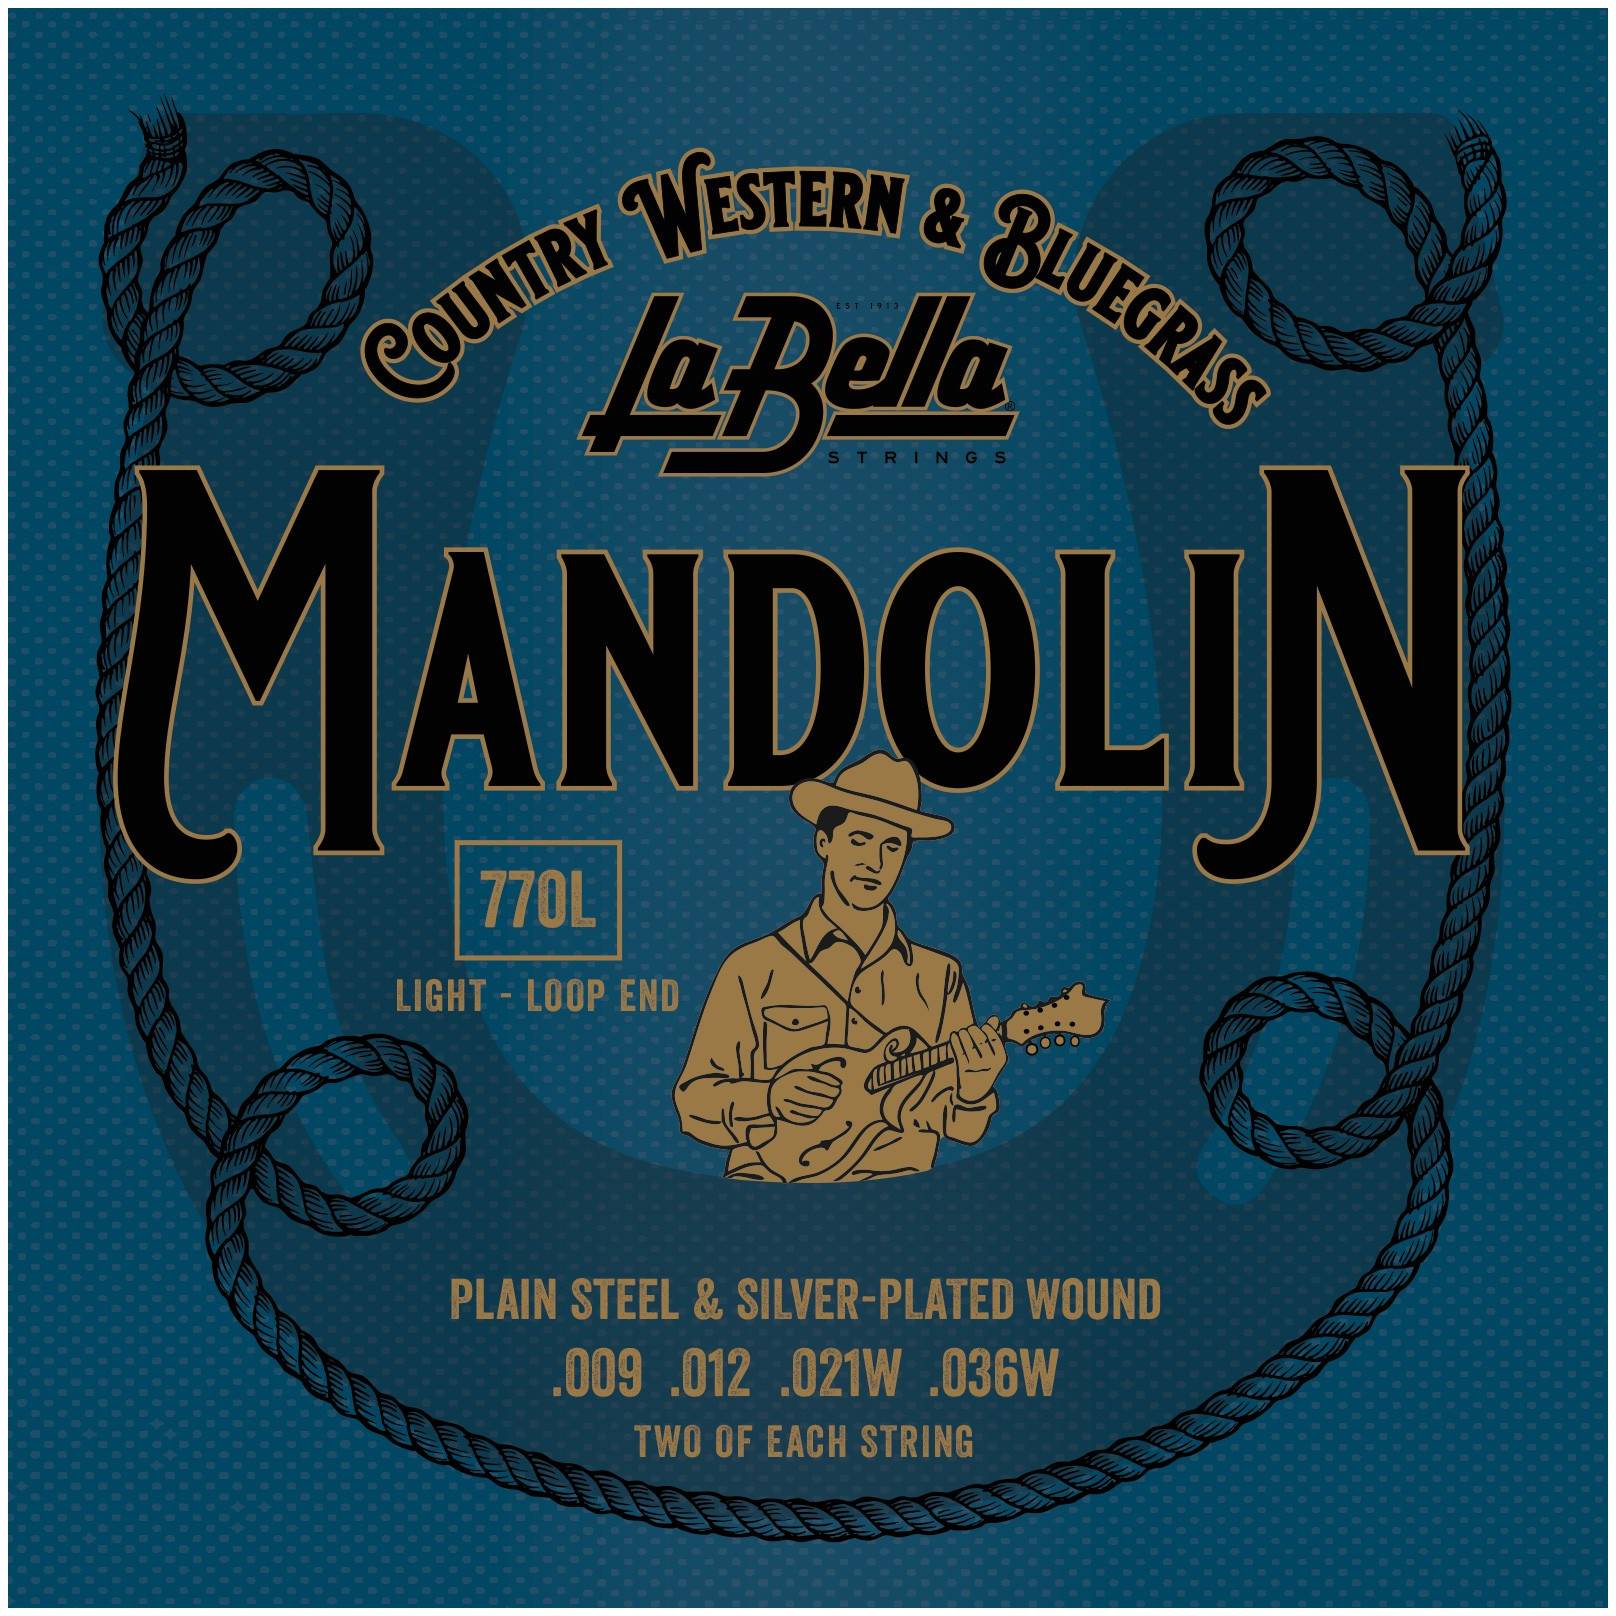 LA BELLA 770L - Струны для мандолины